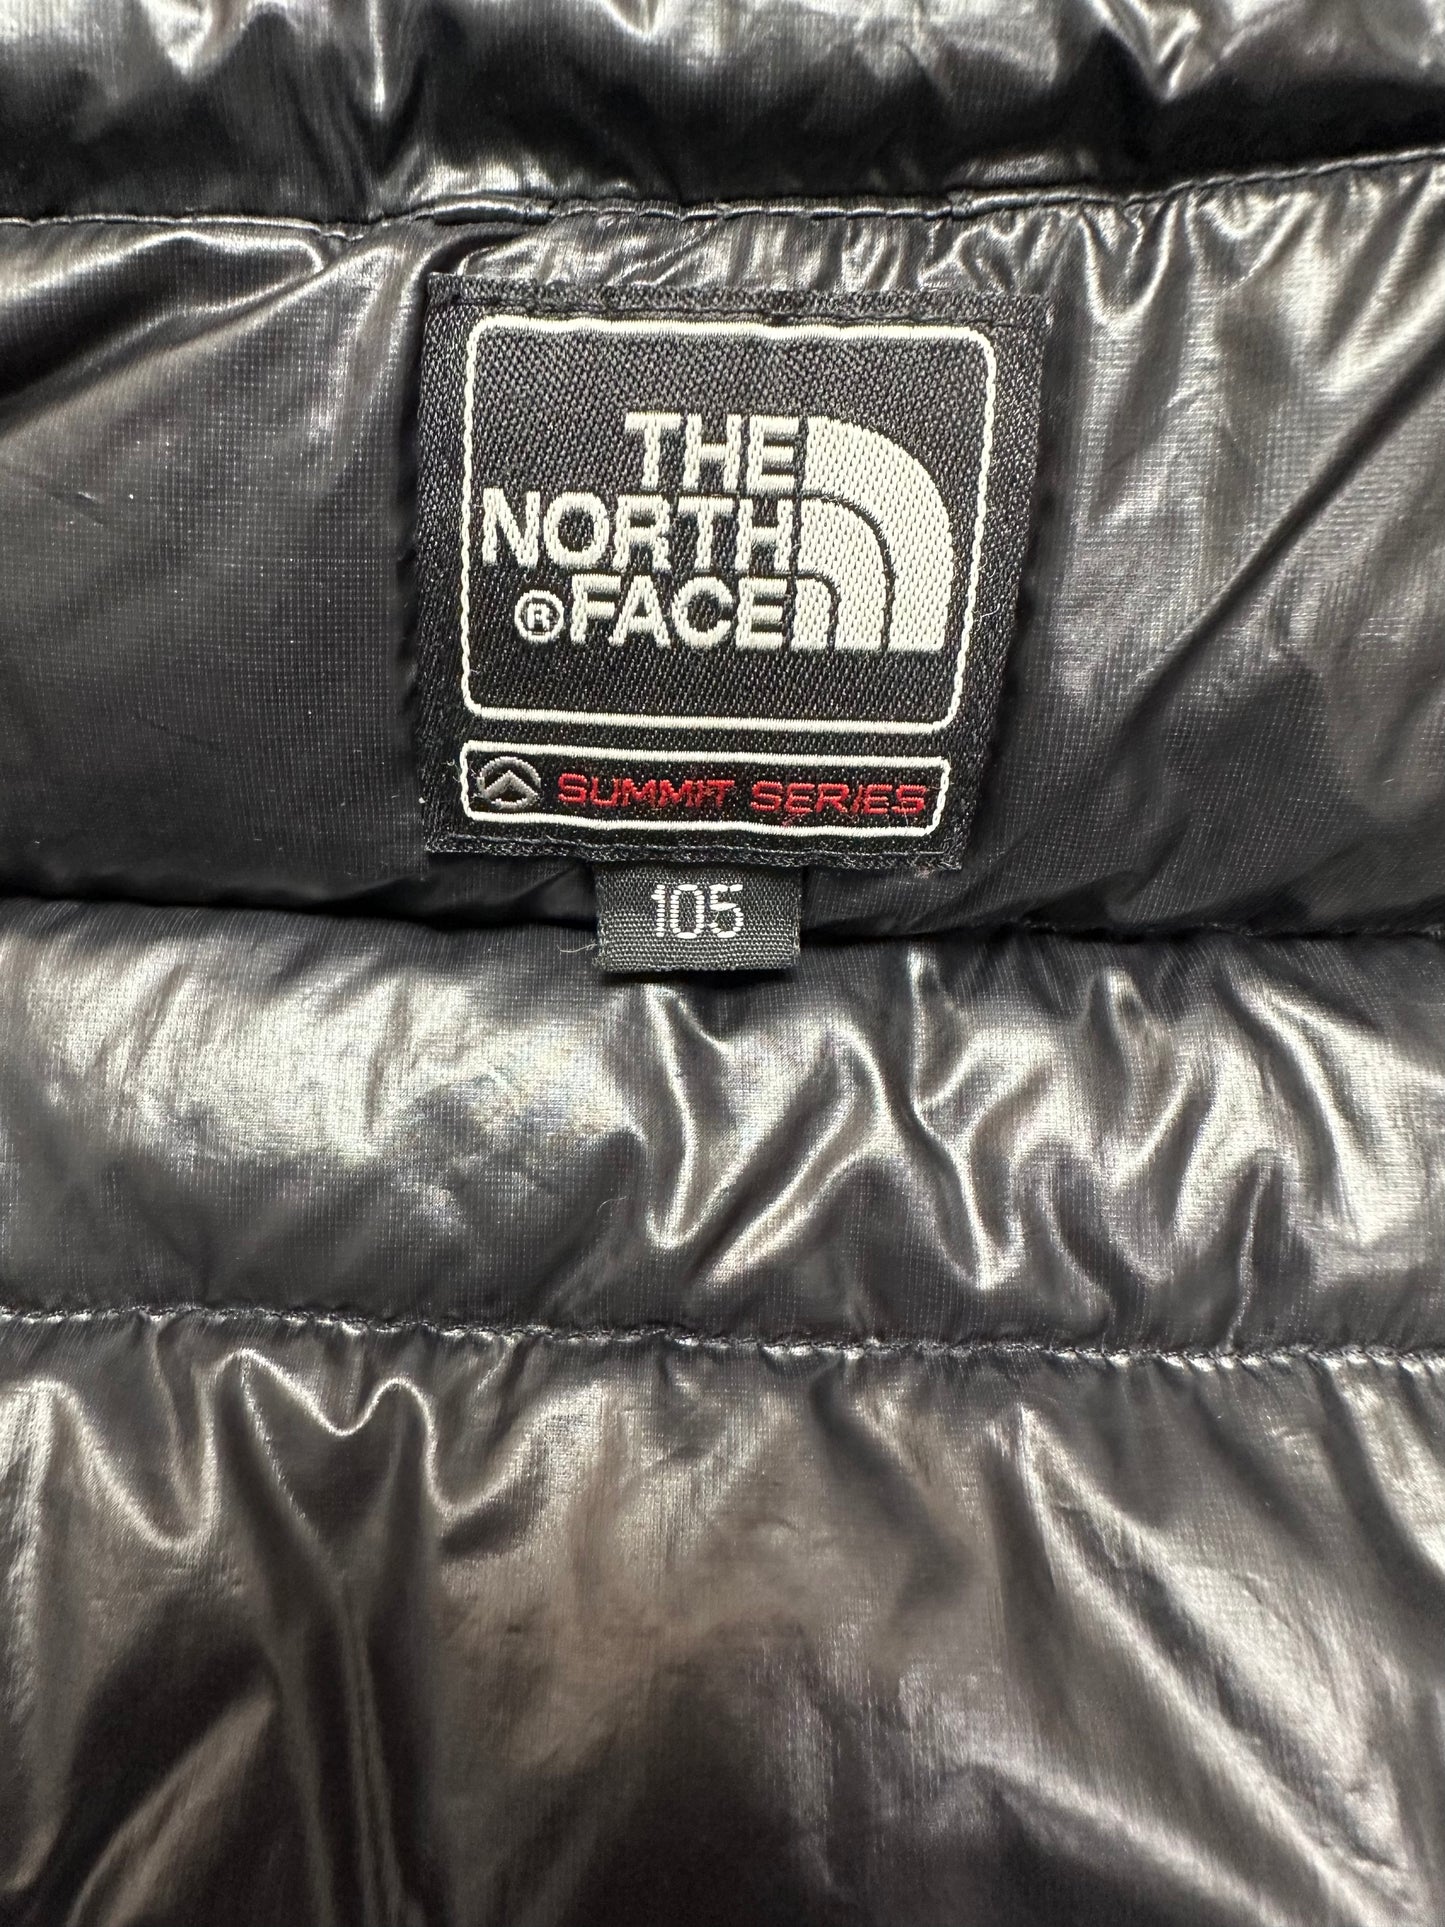 10021【THE NORTH FACE】ザノースフェイス メンズ サミットシリーズ クオンタム グース ダウンジャケット ブラック 105